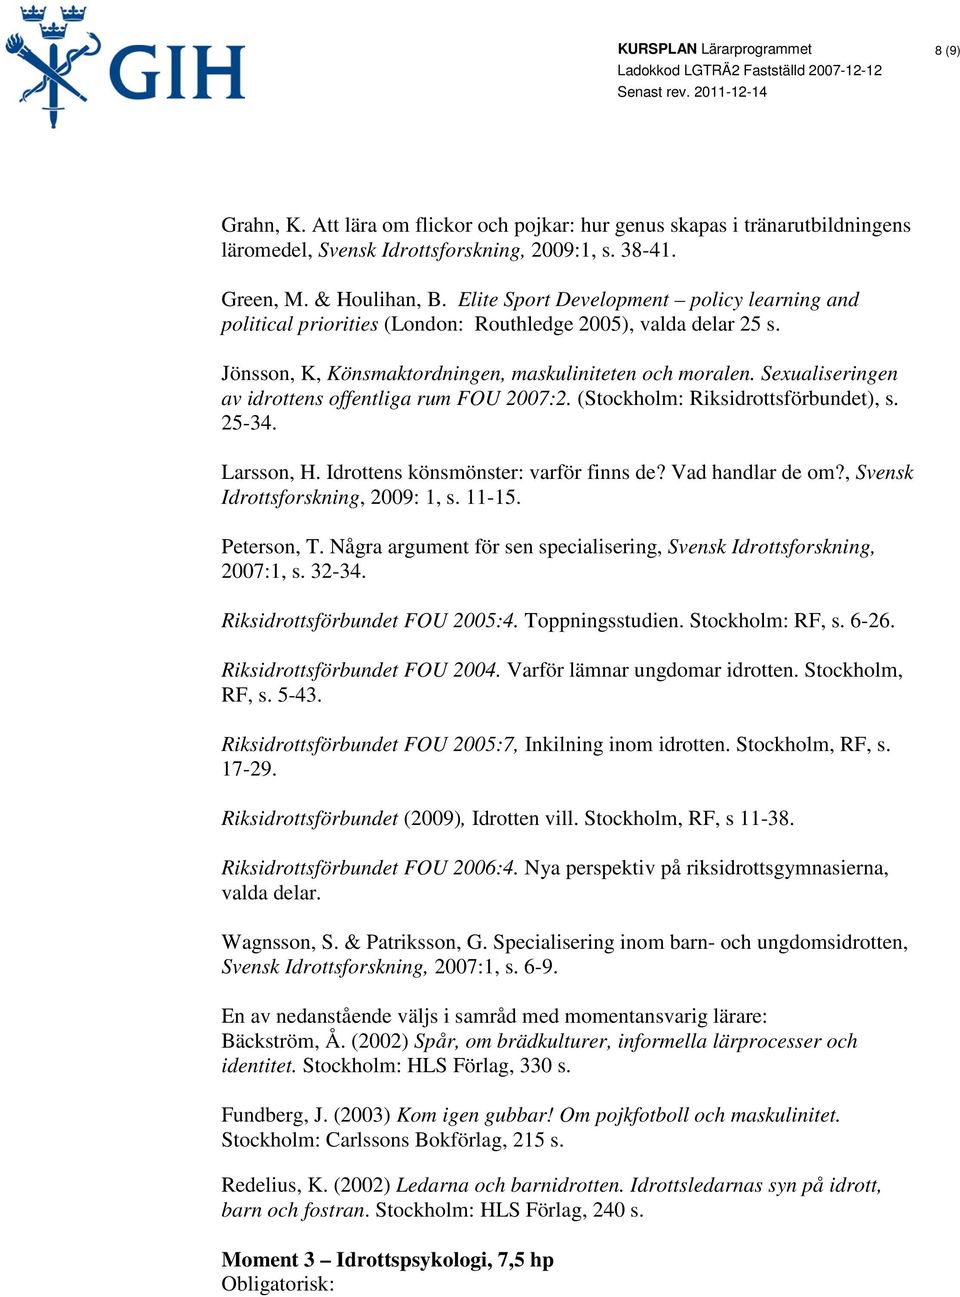 Sexualiseringen av idrottens offentliga rum FOU 2007:2. (Stockholm: Riksidrottsförbundet), s. 25-34. Larsson, H. Idrottens könsmönster: varför finns de? Vad handlar de om?